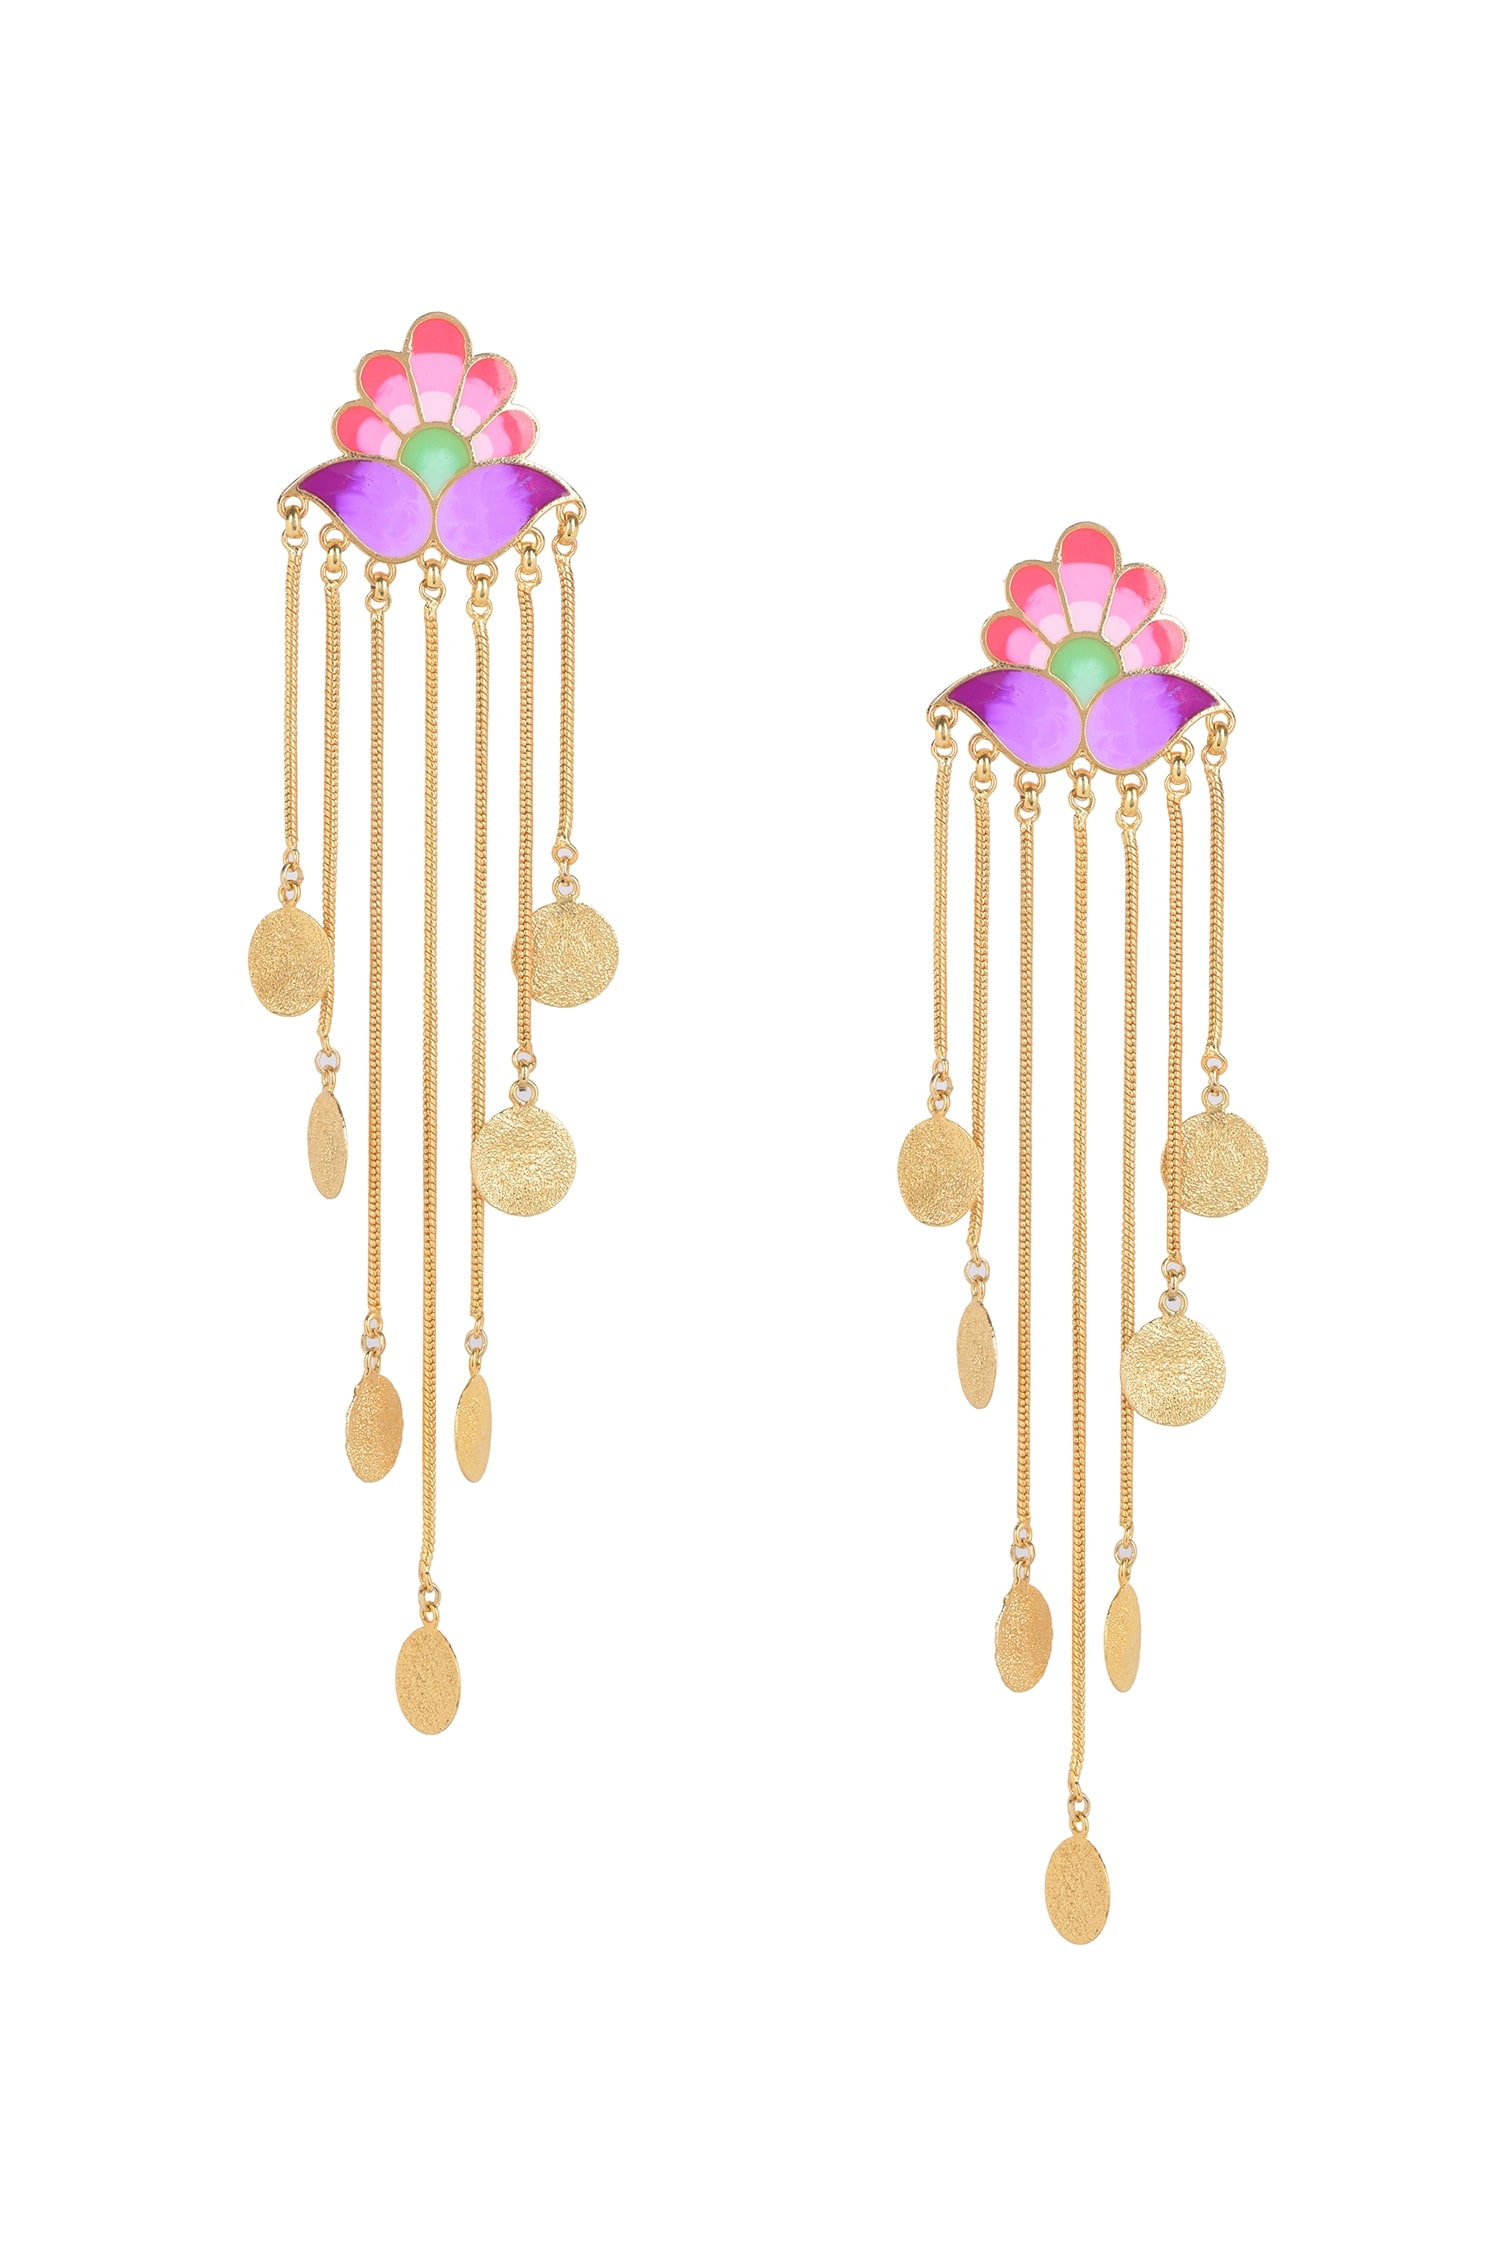 earrings wind chime on Pinterest